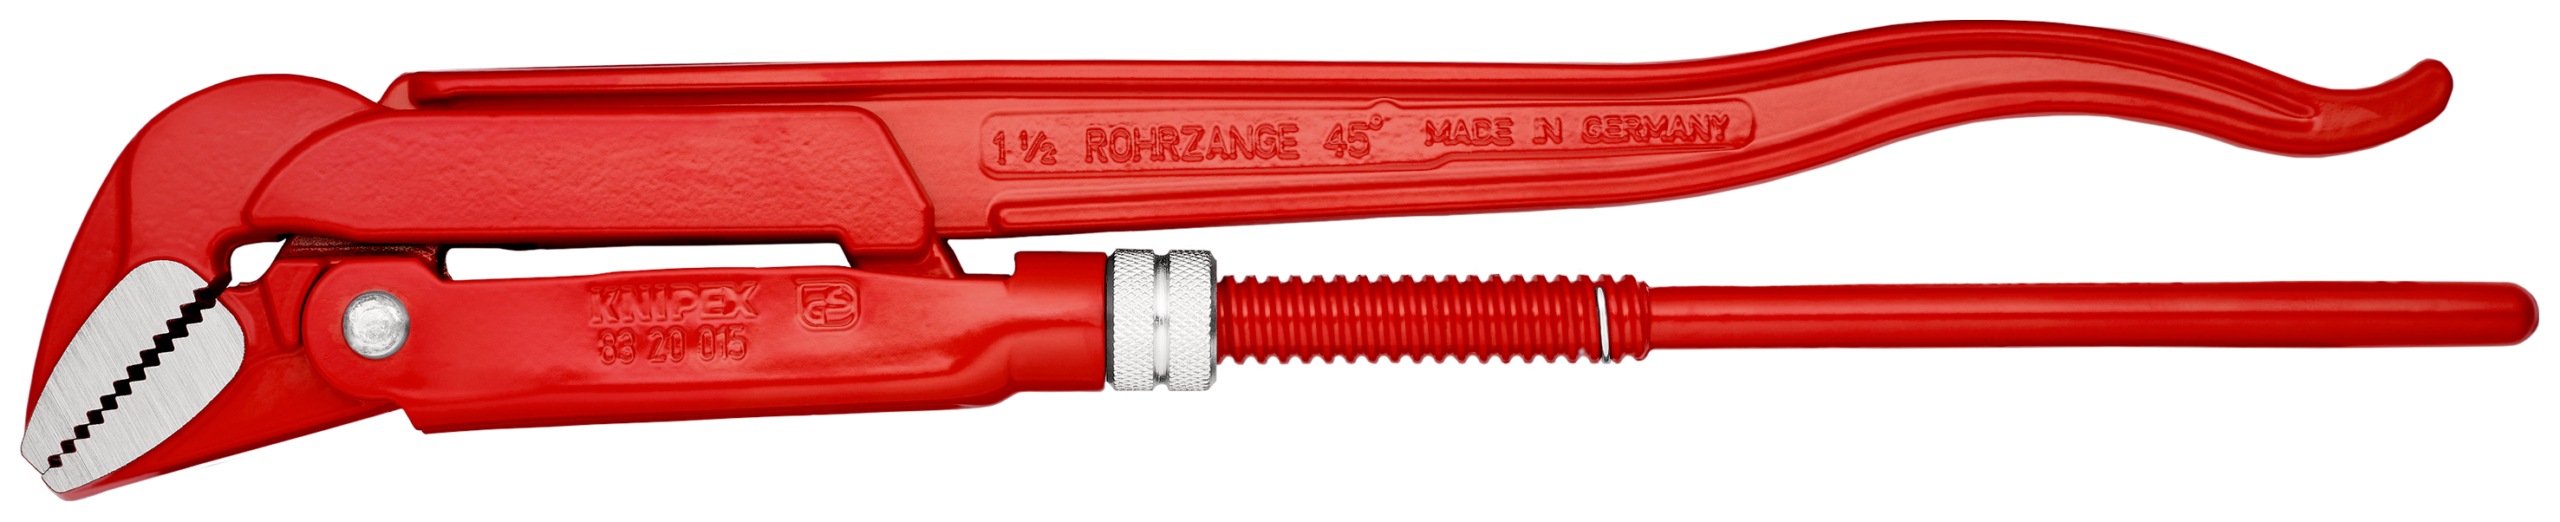 KNIPEX Rörtänger 8320 - 430 mm